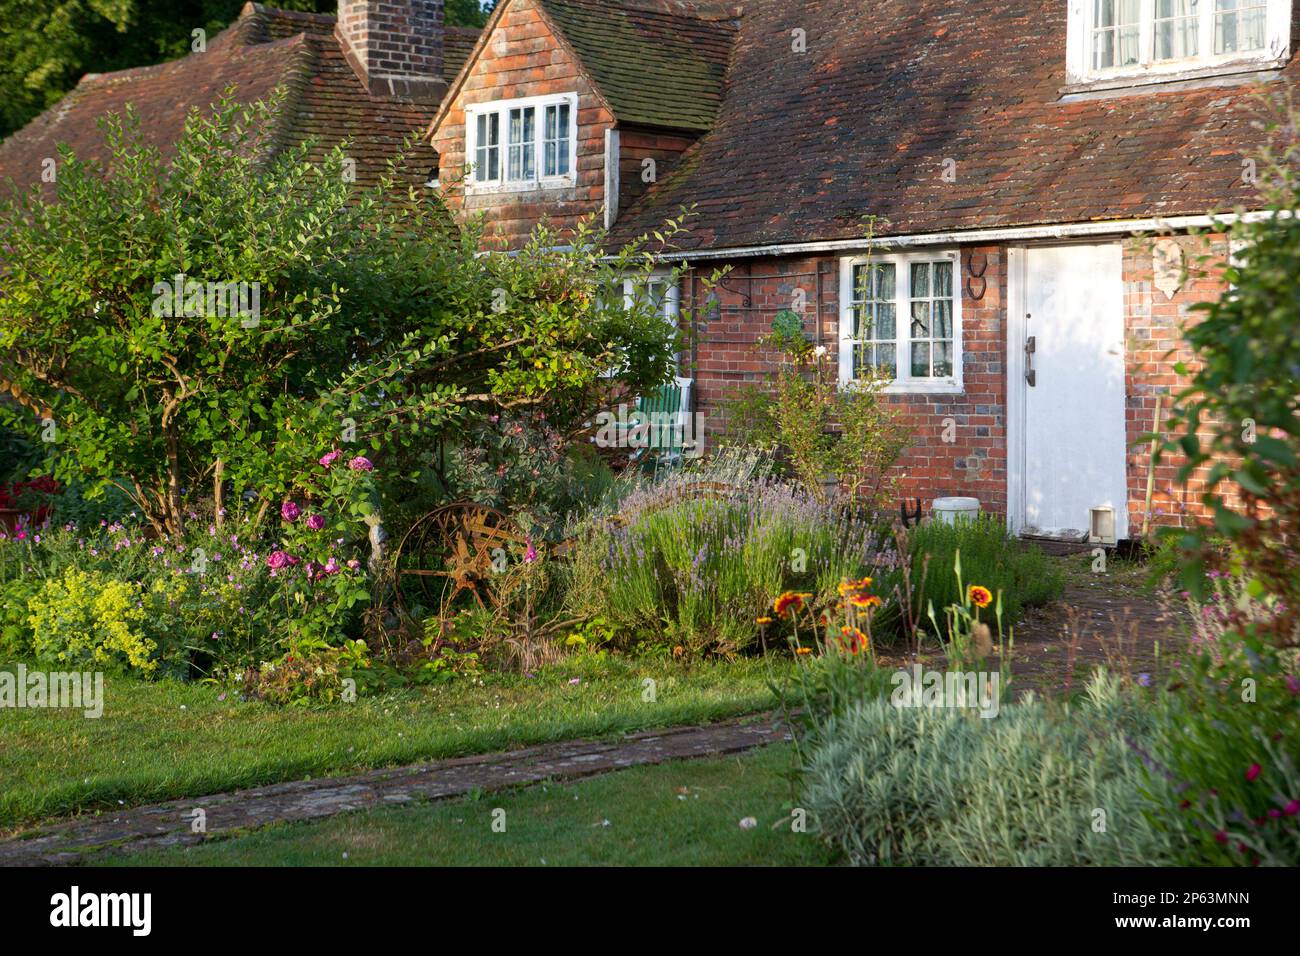 Cottage en brique rouge avec jardin rustique en fonte Banque D'Images